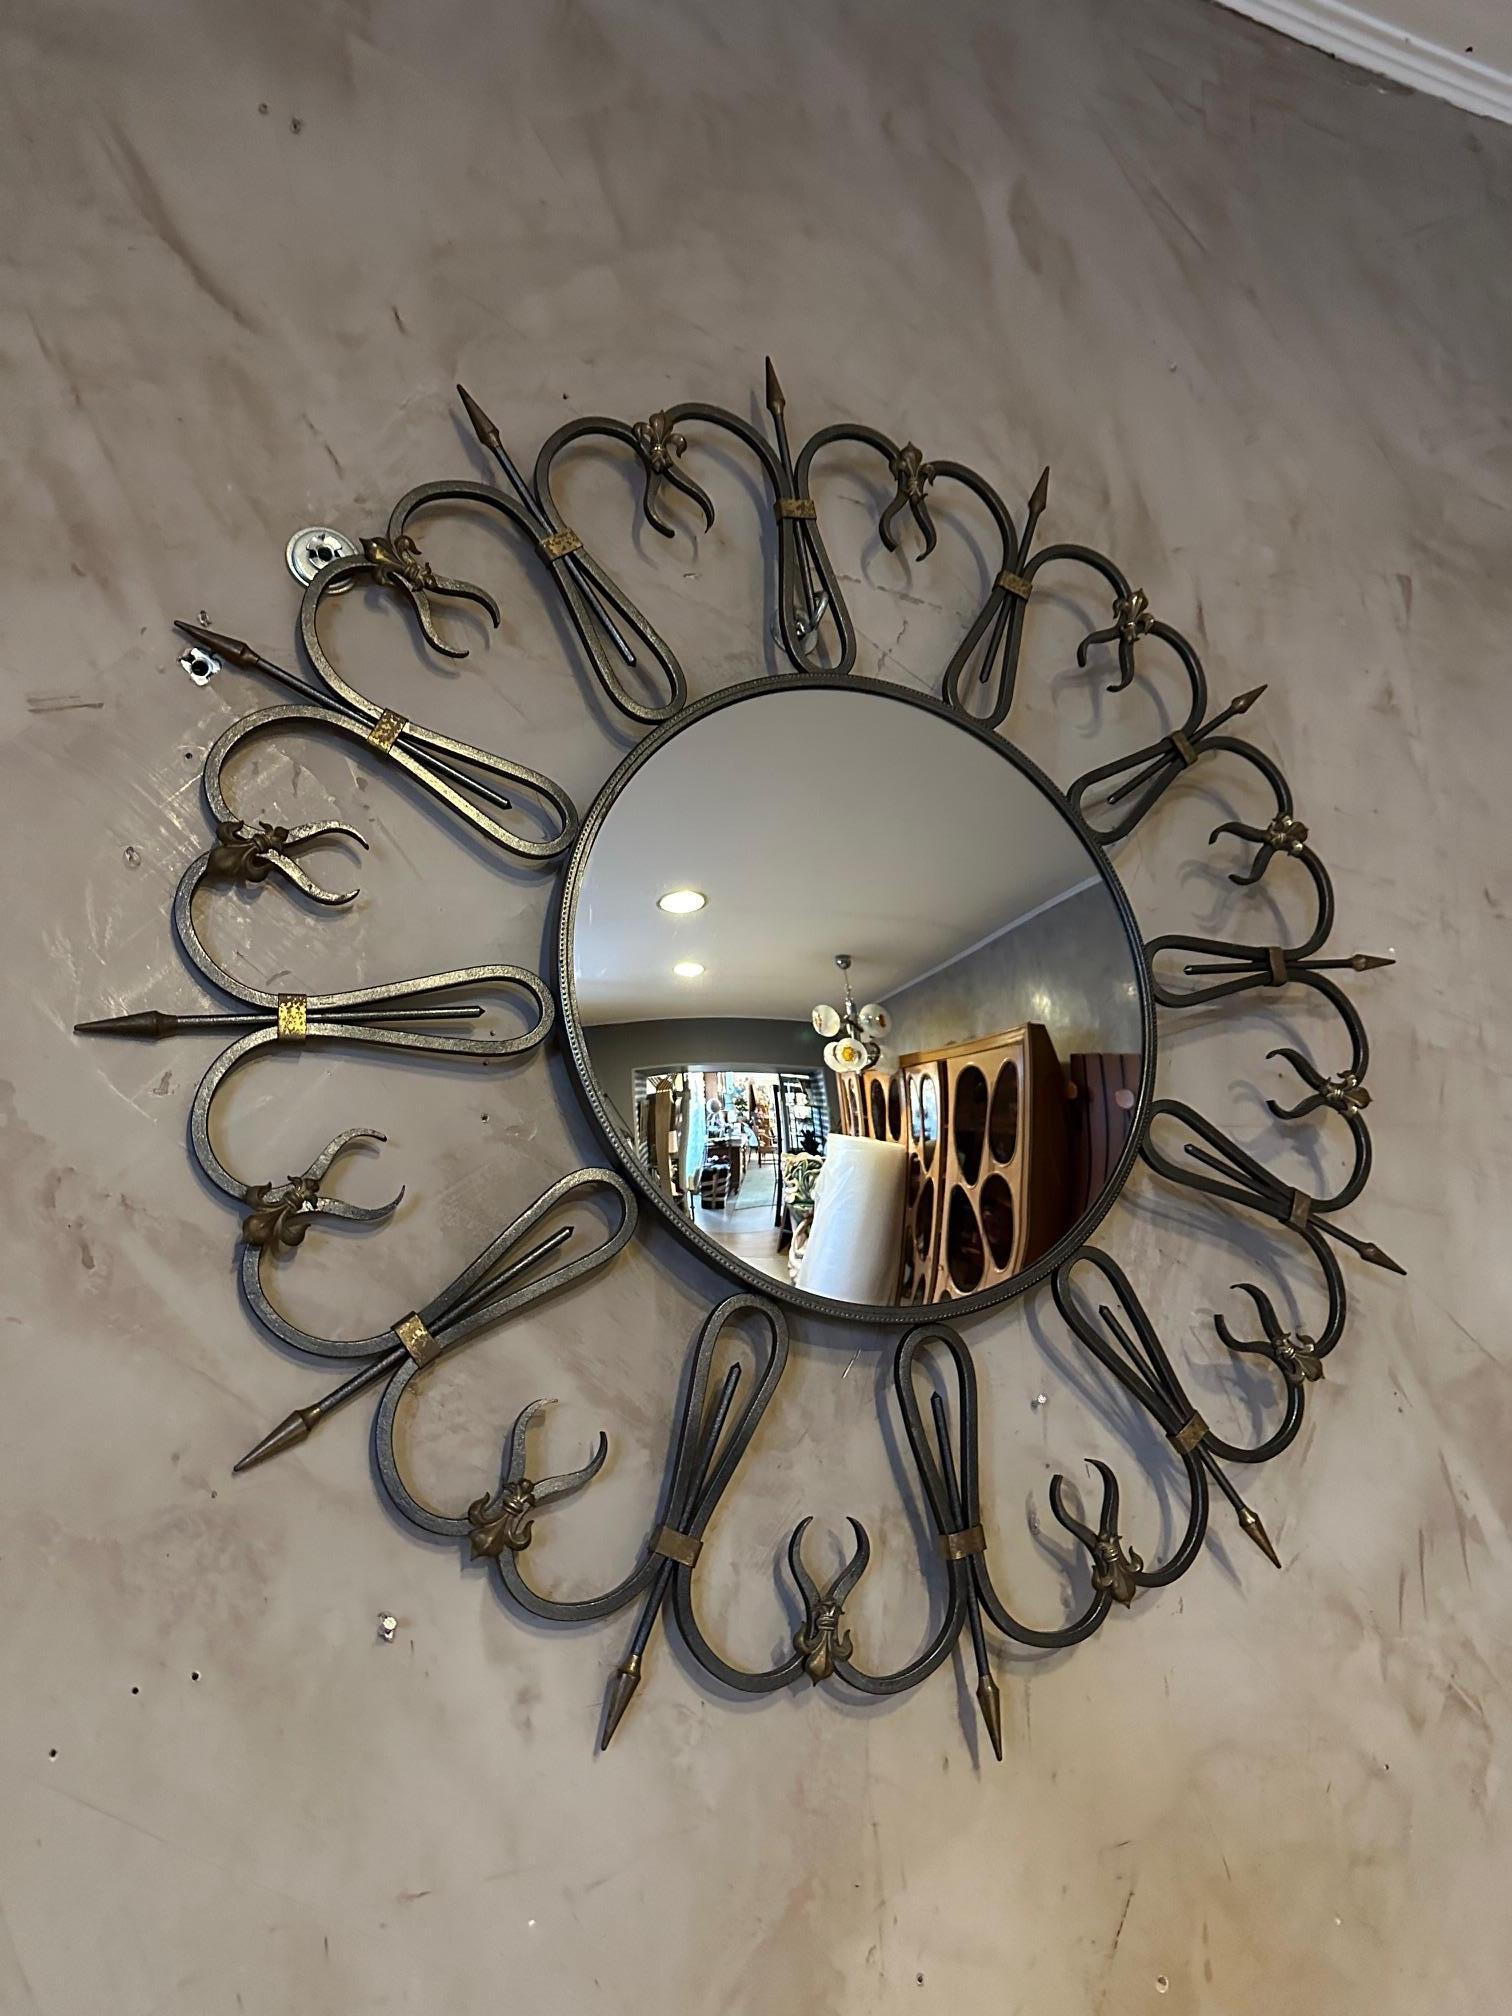 Très beau miroir des années 60 en fer forgé et miroir de sorcière incurvé. Décoration de fleurs de lys. Crochet au dos pour accrocher le miroir au mur. Magnifique travail de ferronnerie. Miroir très élégant et en bon état.